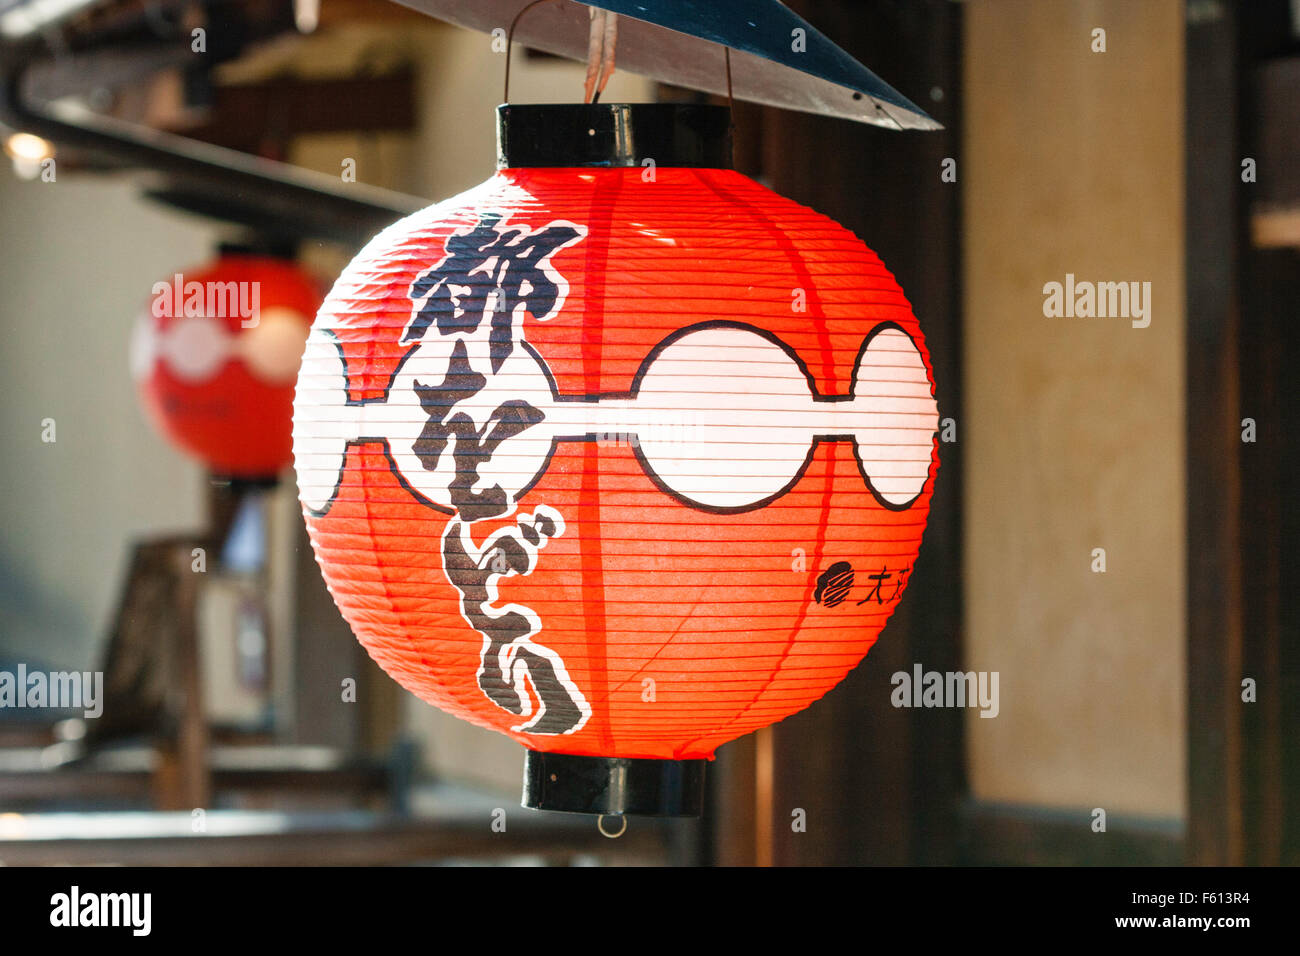 Japan, Kyoto, Gion. Red pattened lantern, Chochin, hanging outside store. Stock Photo